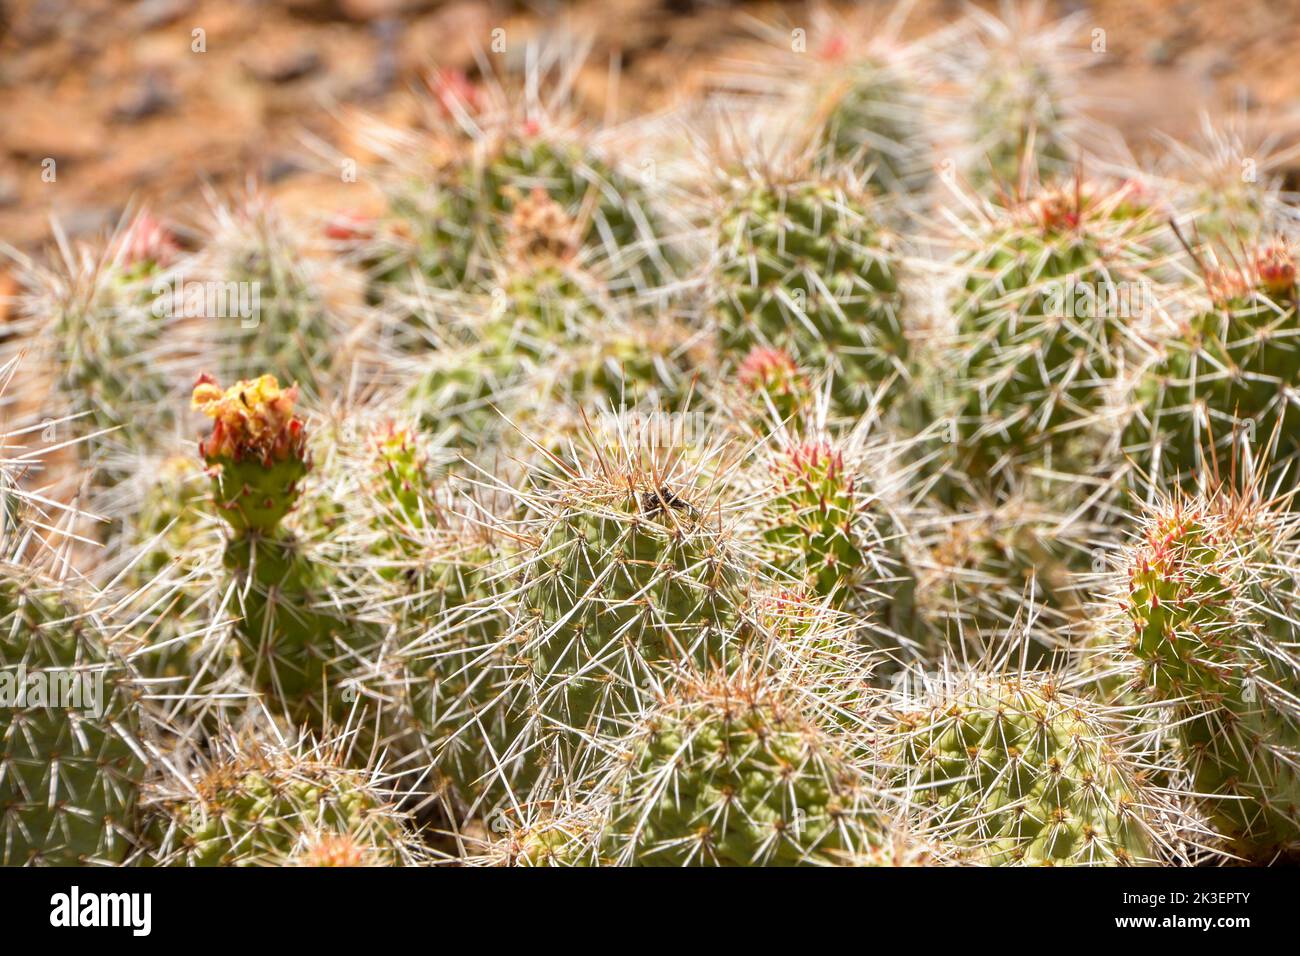 Gros plan de petits cactus sur le sol, on est en pleine floraison, dans la région du High Desert près de Moffatt, dans le Colorado, aux États-Unis Banque D'Images